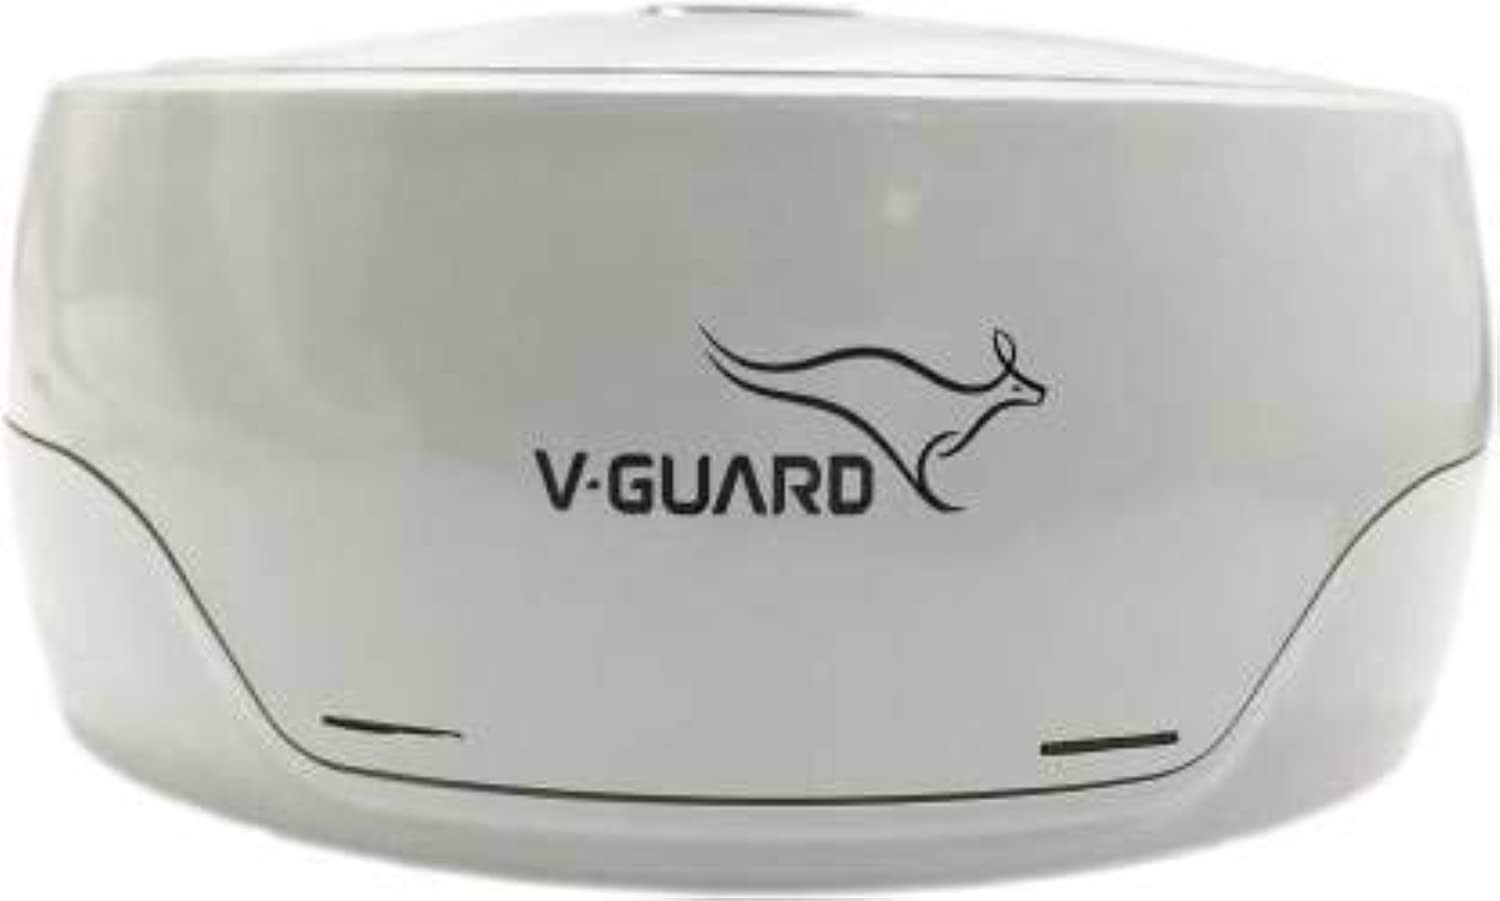 V-Guard VG 50 Voltage Stabilizer for Refrigerator Grey